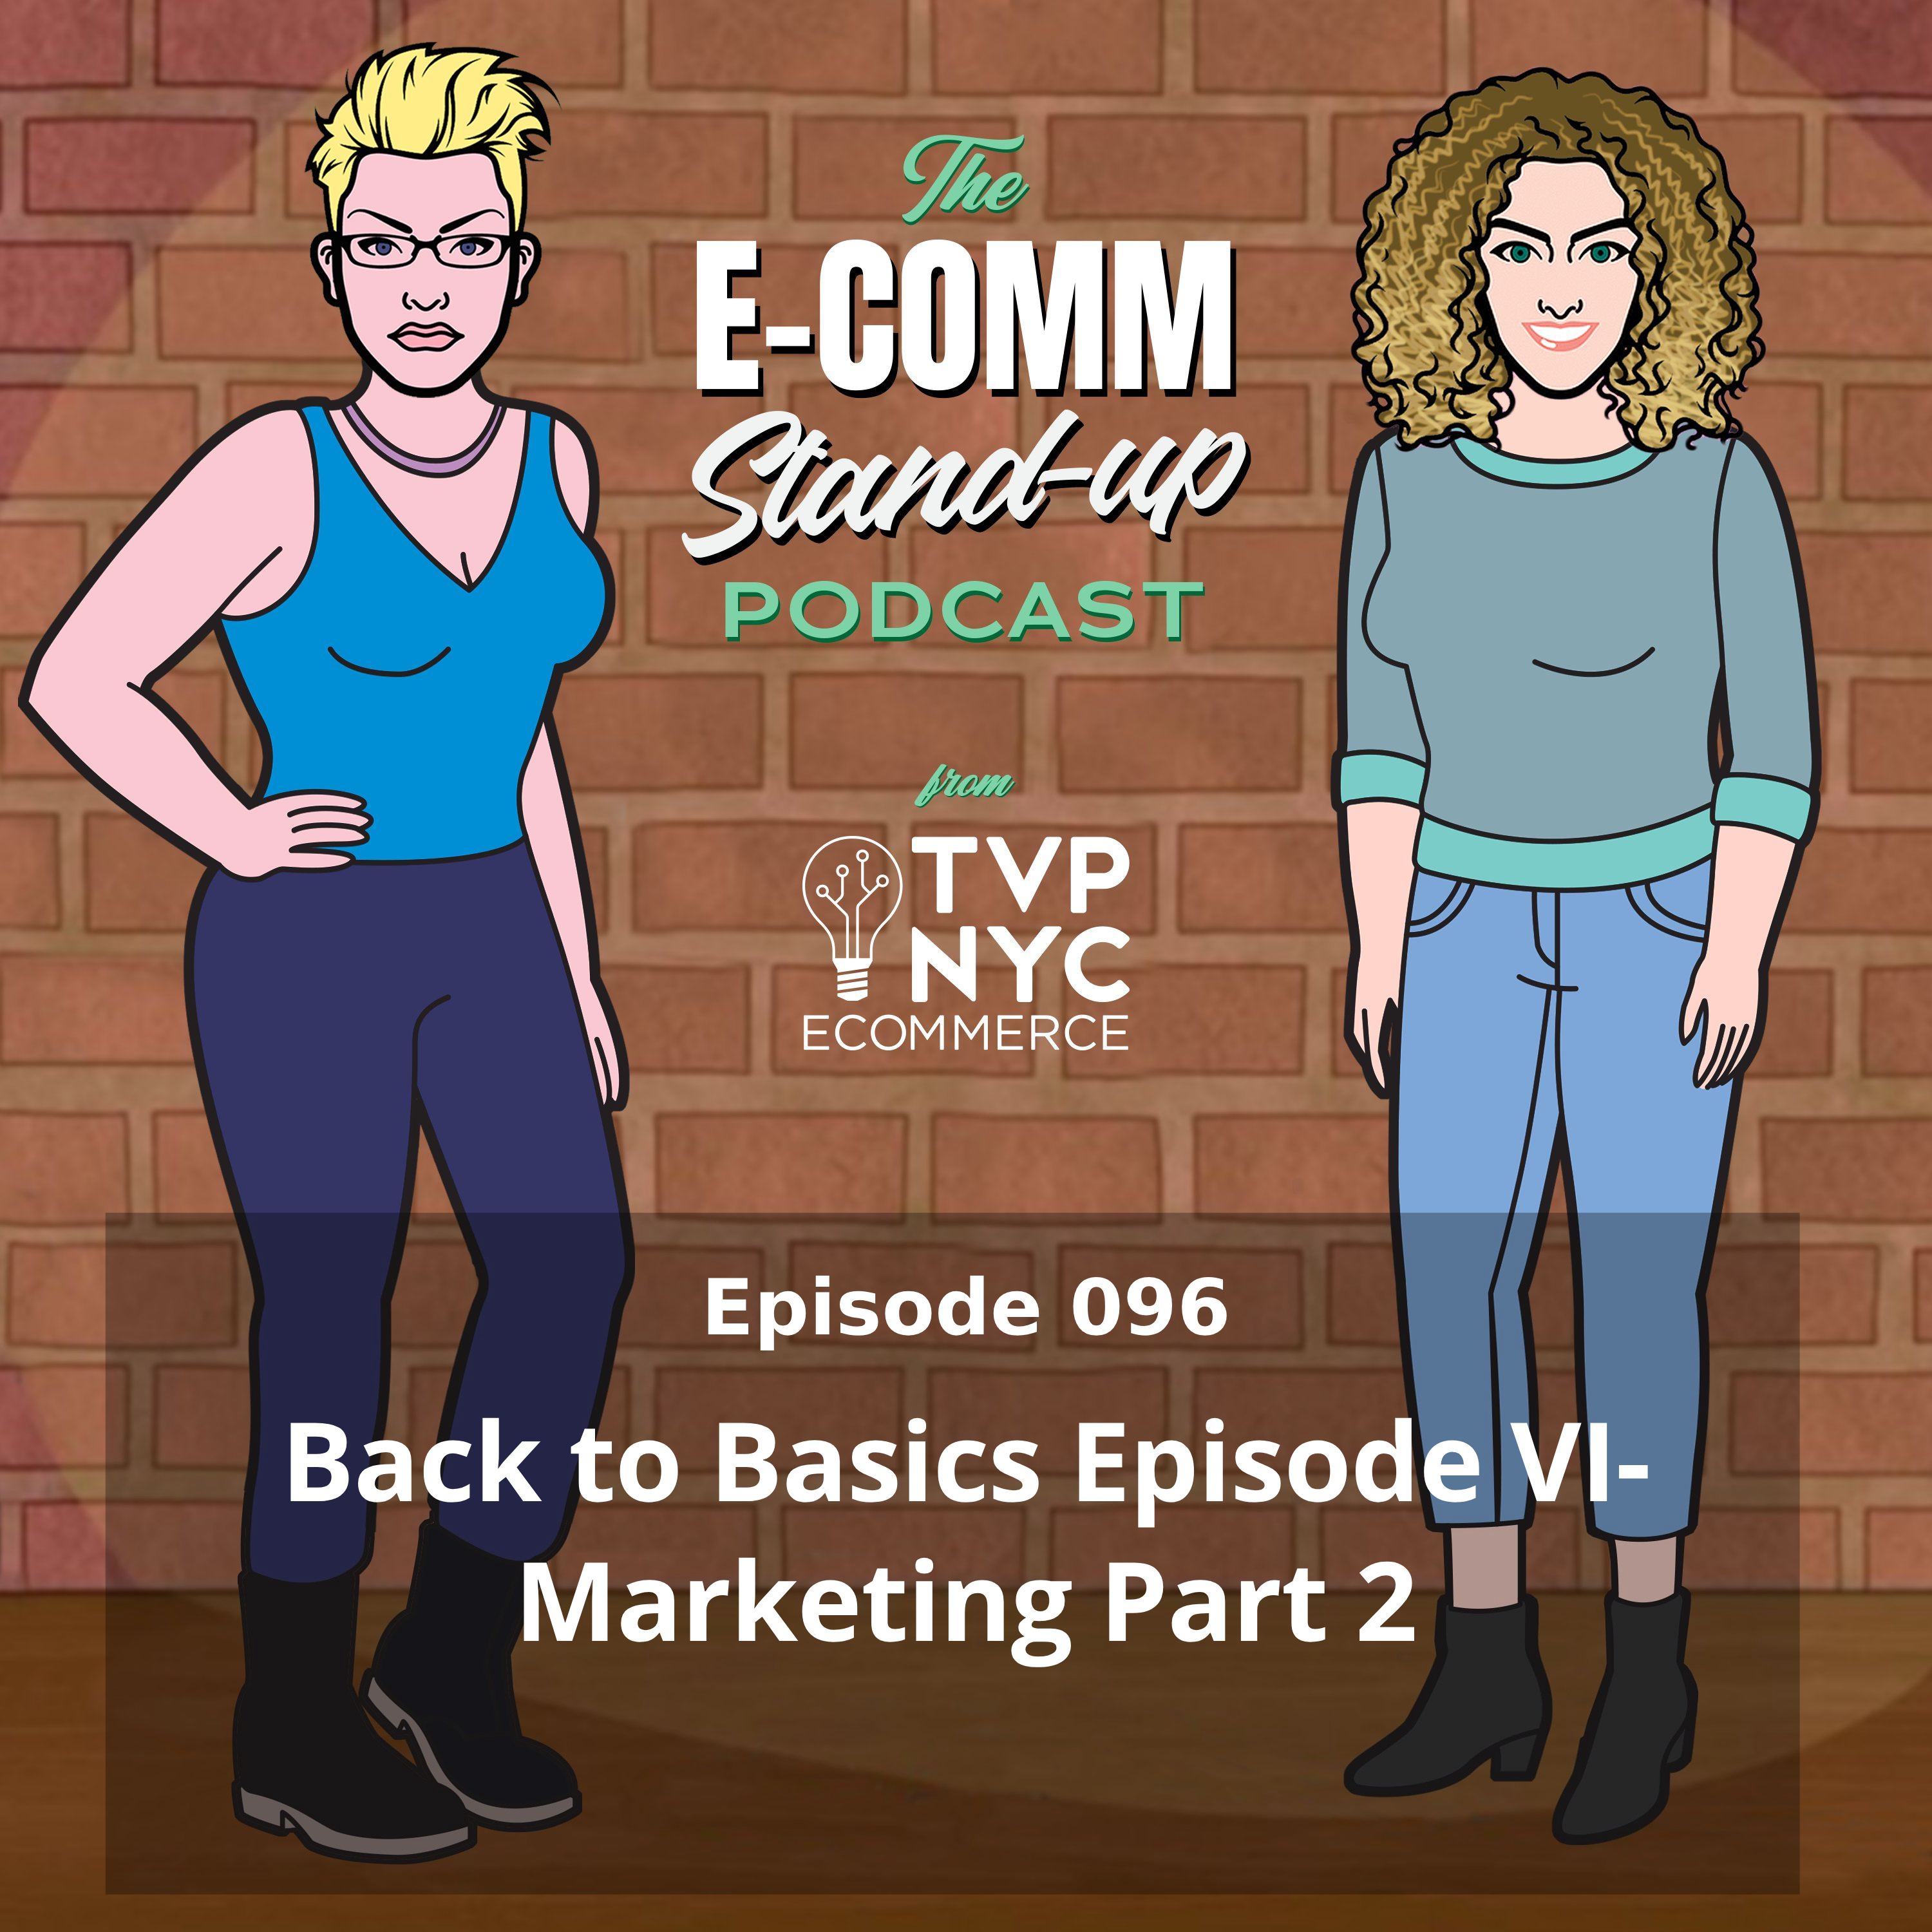 Back to Basics Episode VI- Marketing Part 2